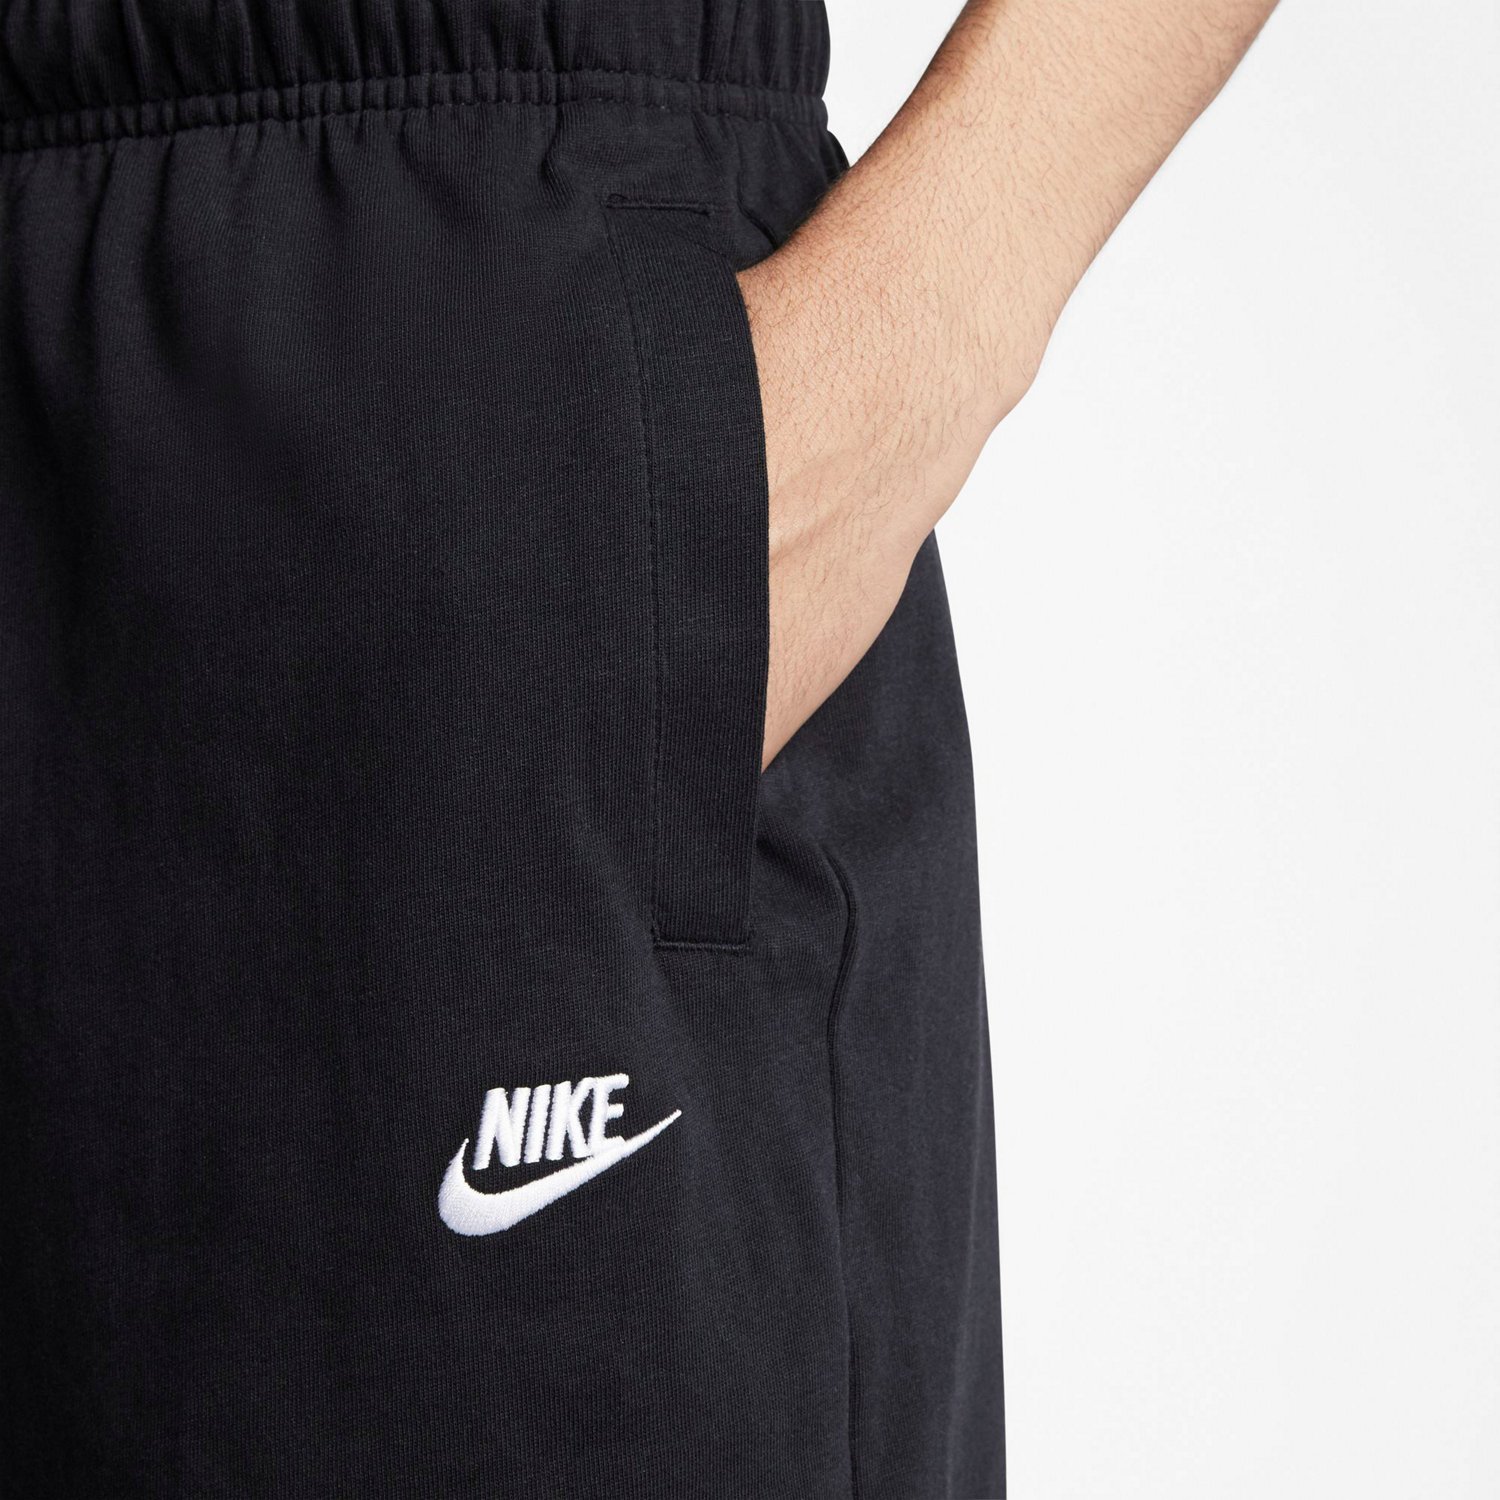 nike men's sportswear club jersey graphic shorts 10 in